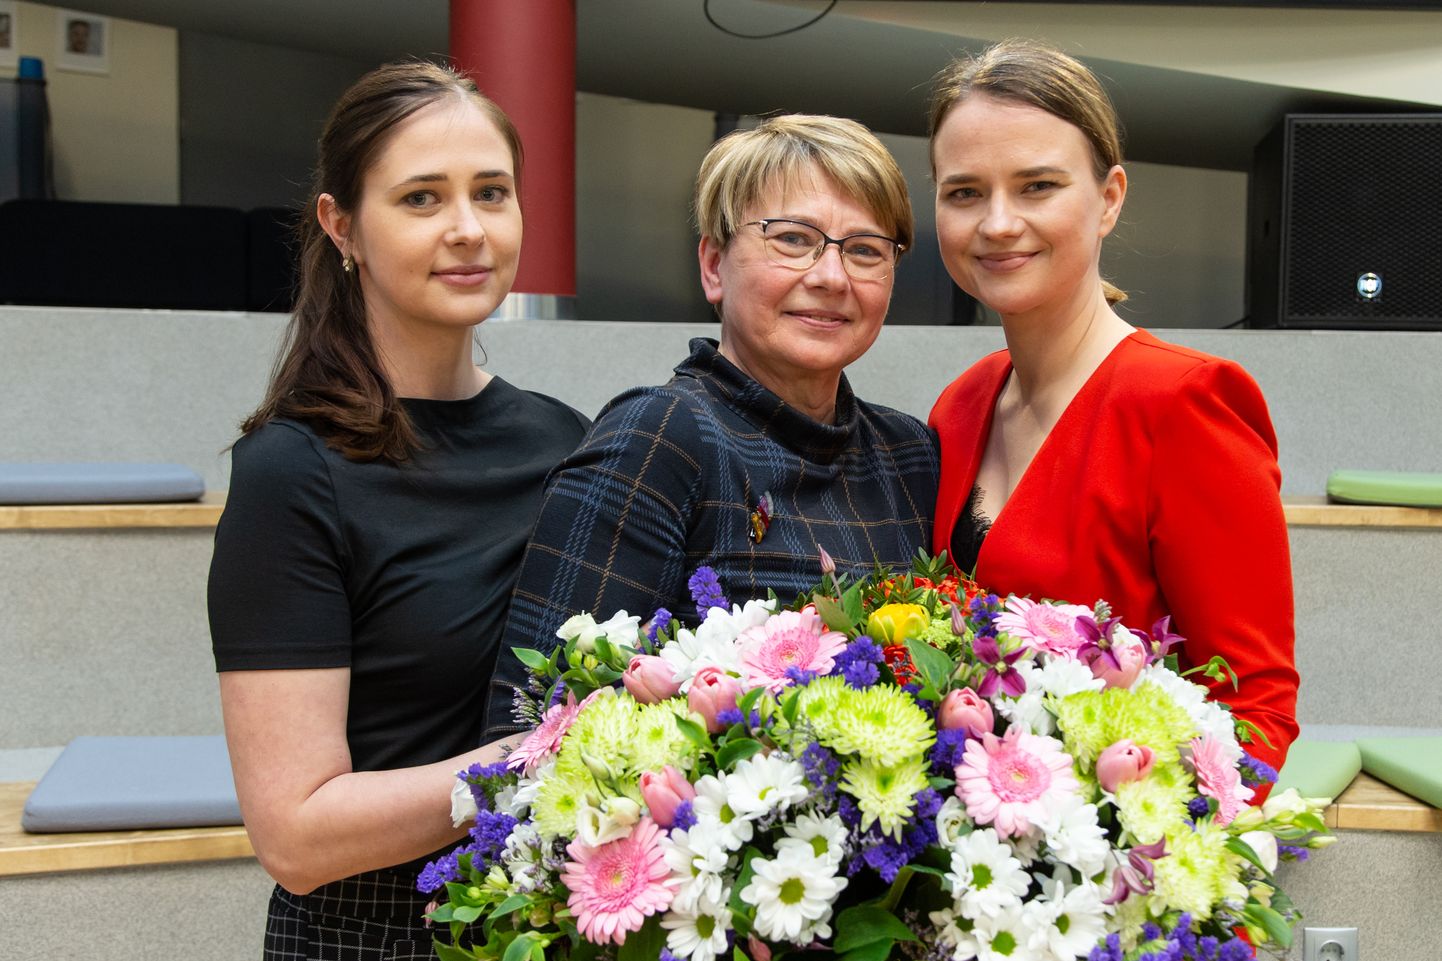 Среди первых поздравивших были дочери Маарья Рая и Вирве Линдер, вместе со старшей сестрой Юлане Вилуметс выдвинувшие маму на конкурс.